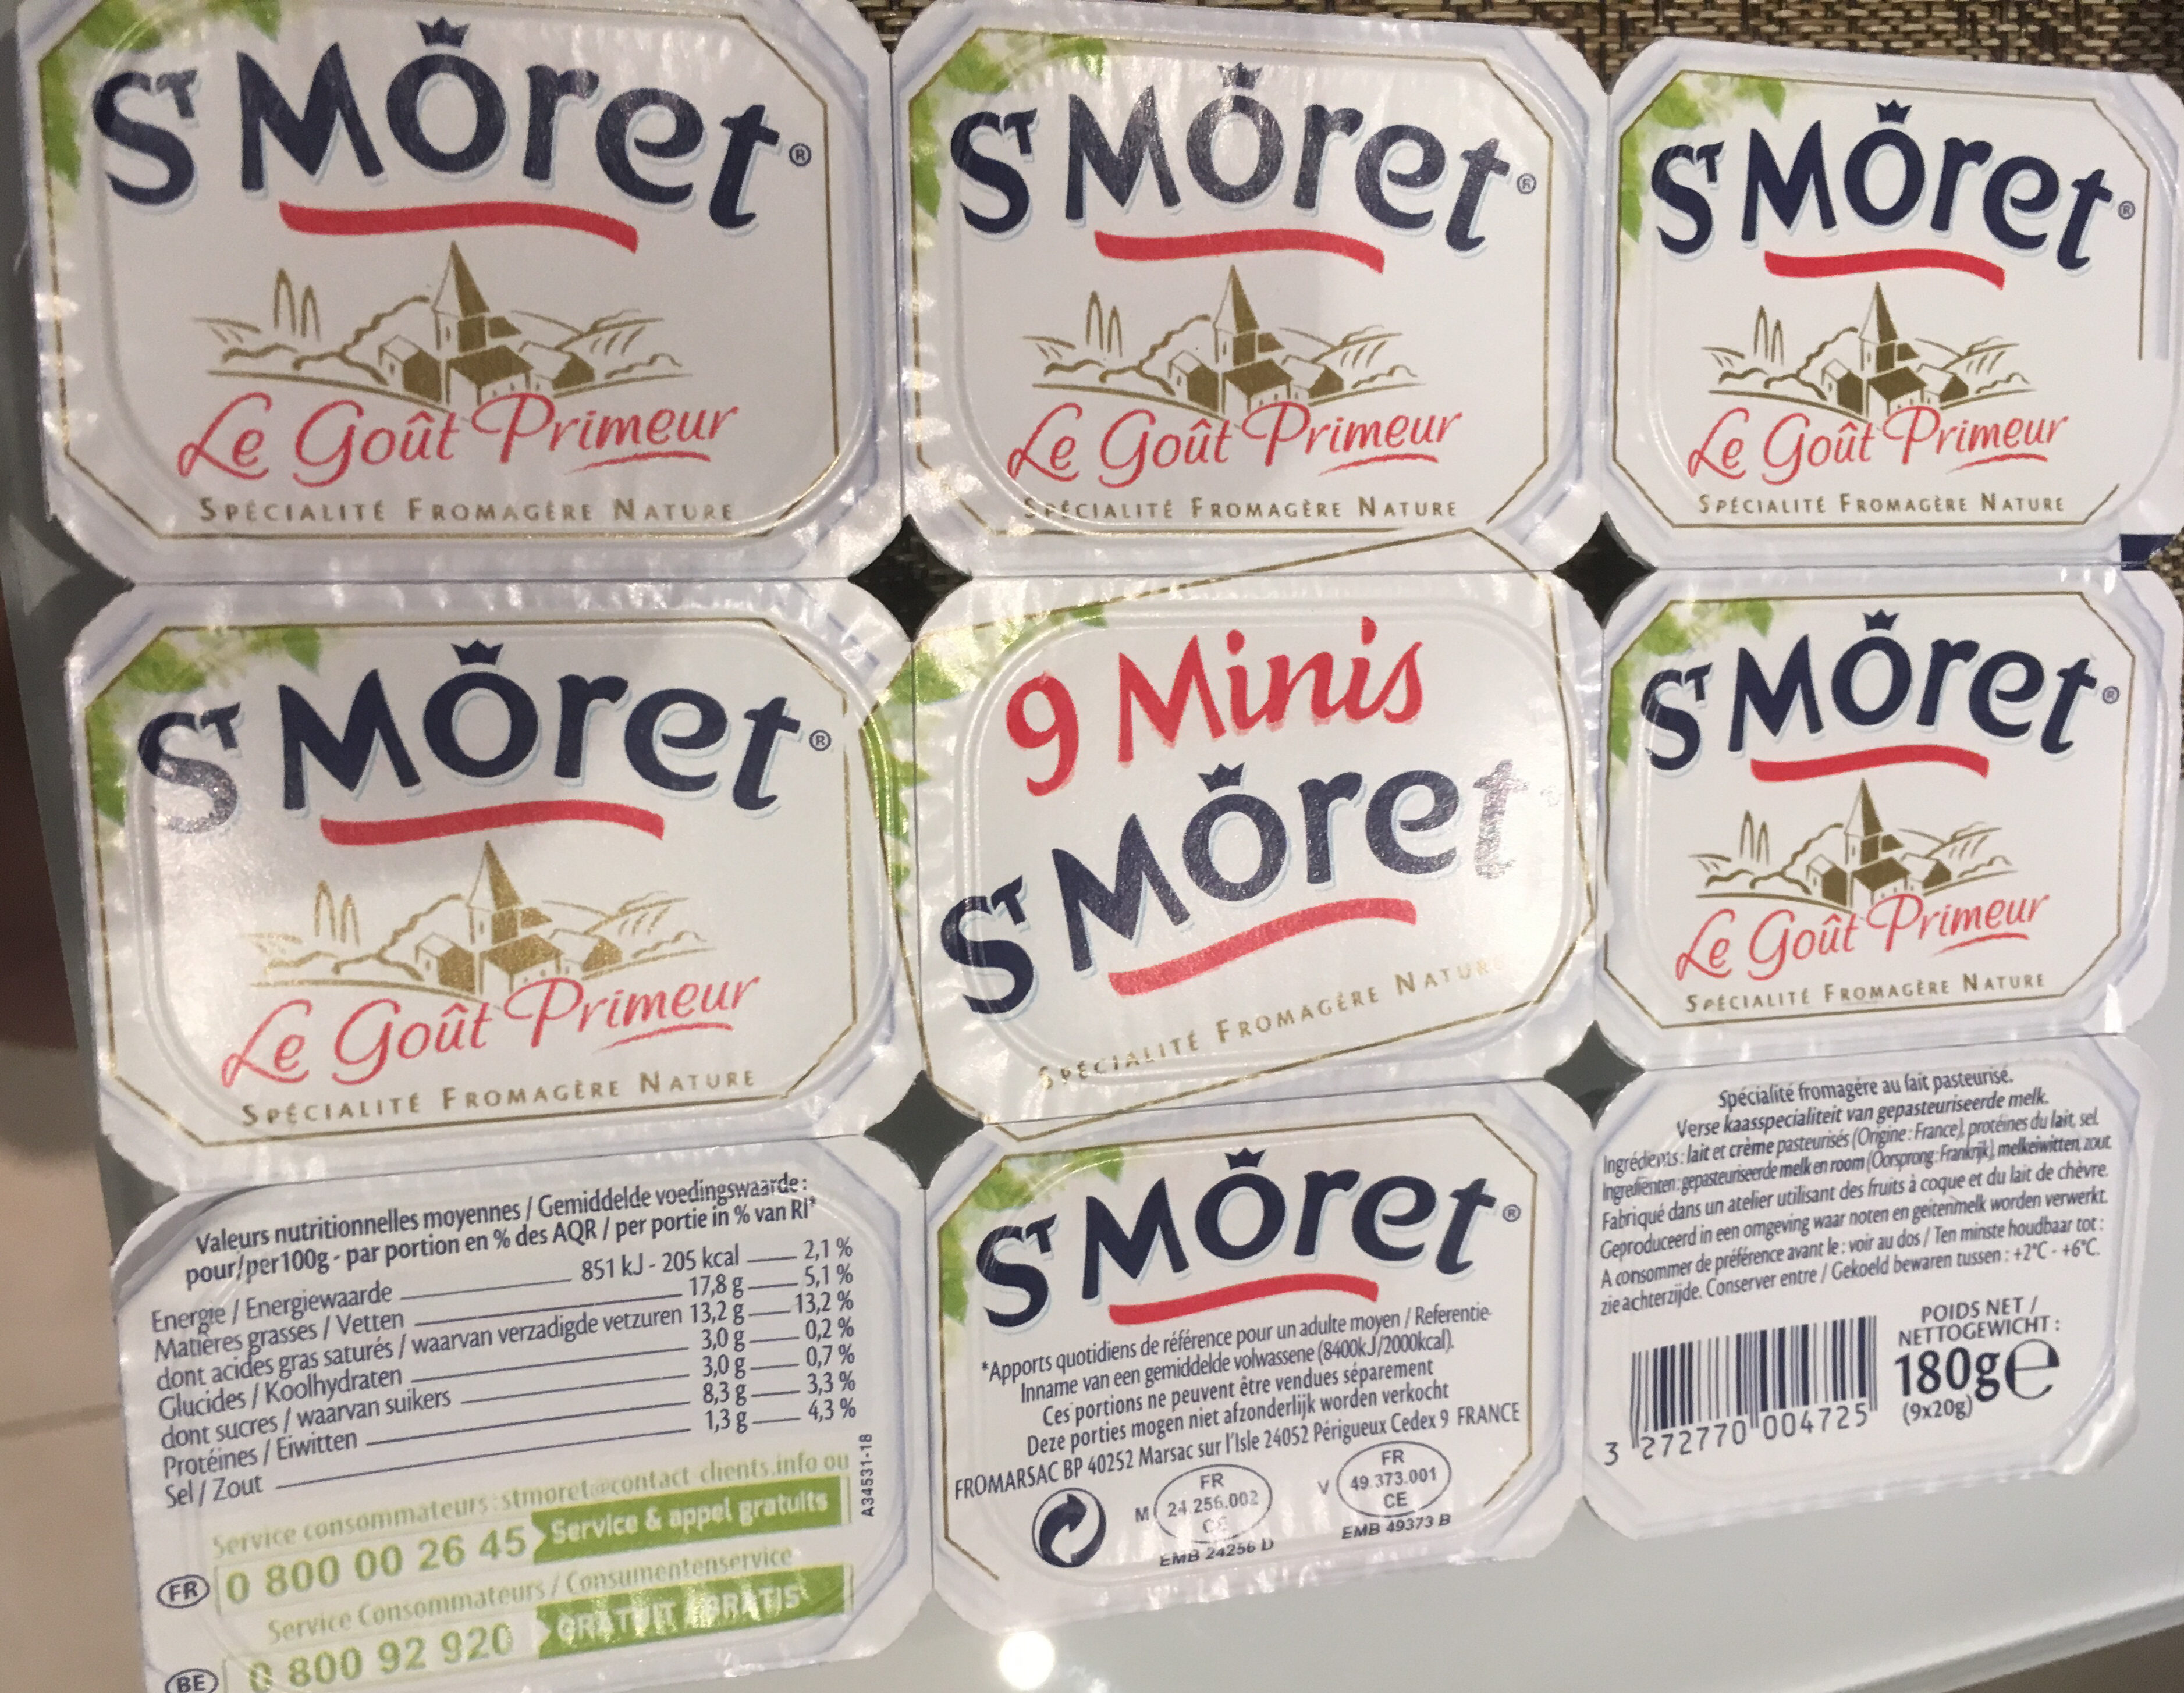 9 Minis St Moret (17,8% MG) - Produit